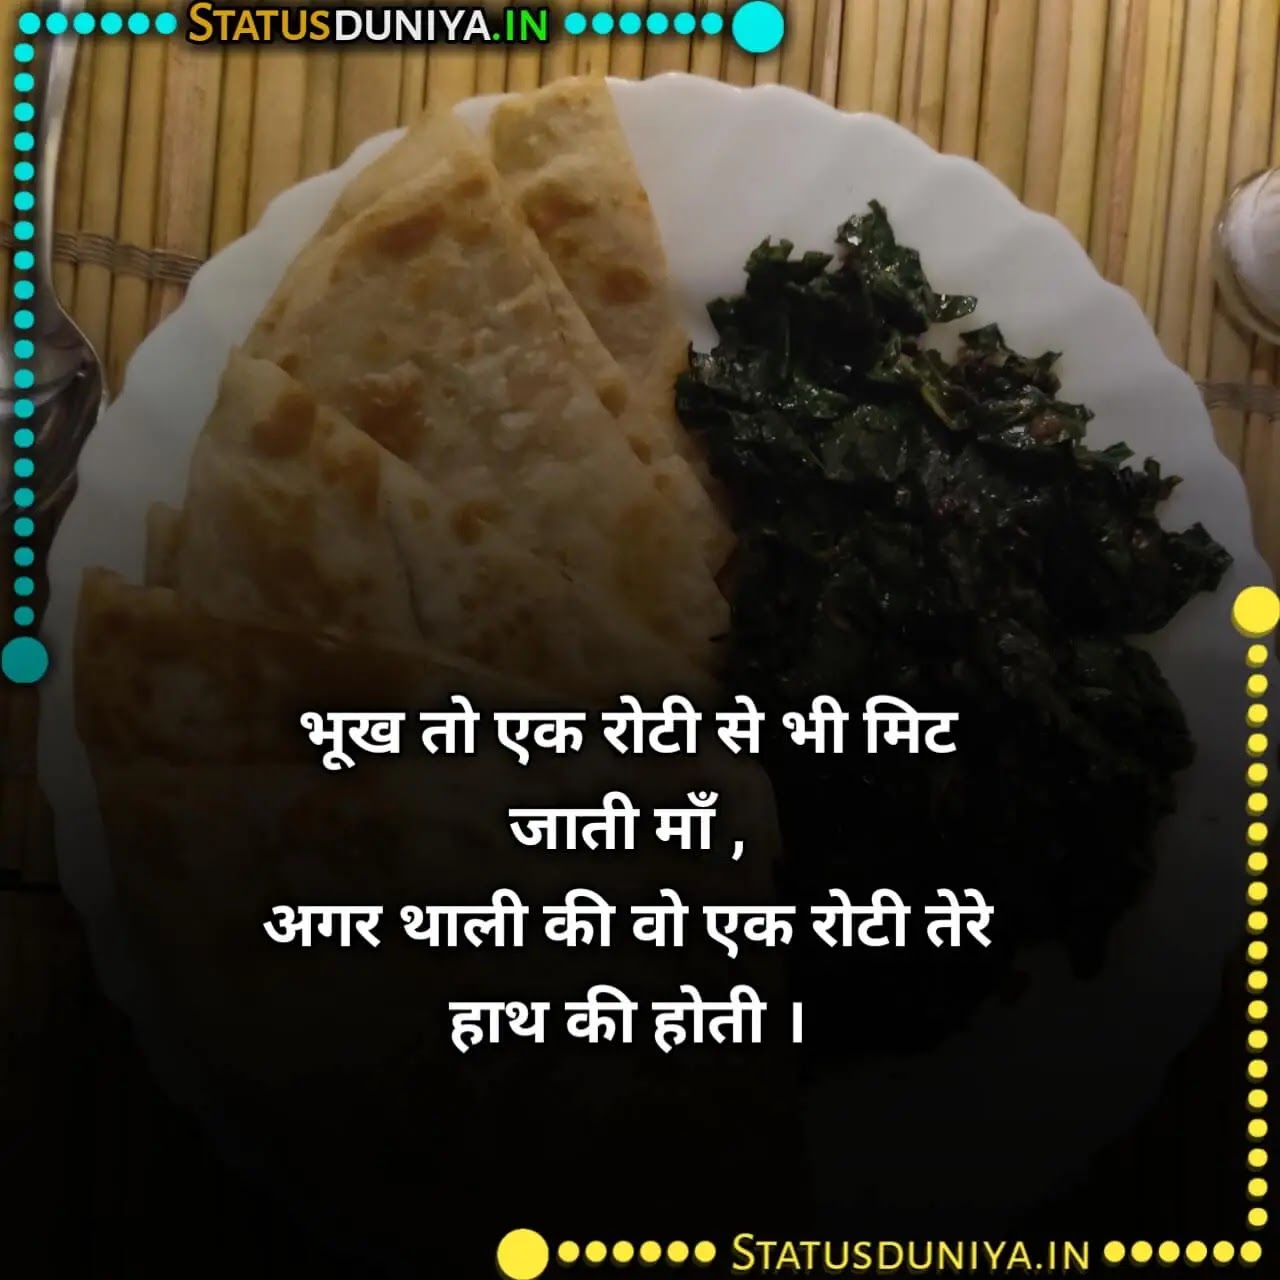 रोटी पर शायरी
Roti Shayari Status In Hindi
रोटी पर शायरी
roti quotes in hindi
roti status
दो वक्त की रोटी शायरी
garib ki roti
दाल रोटी शायरी
do waqt ki roti shayari